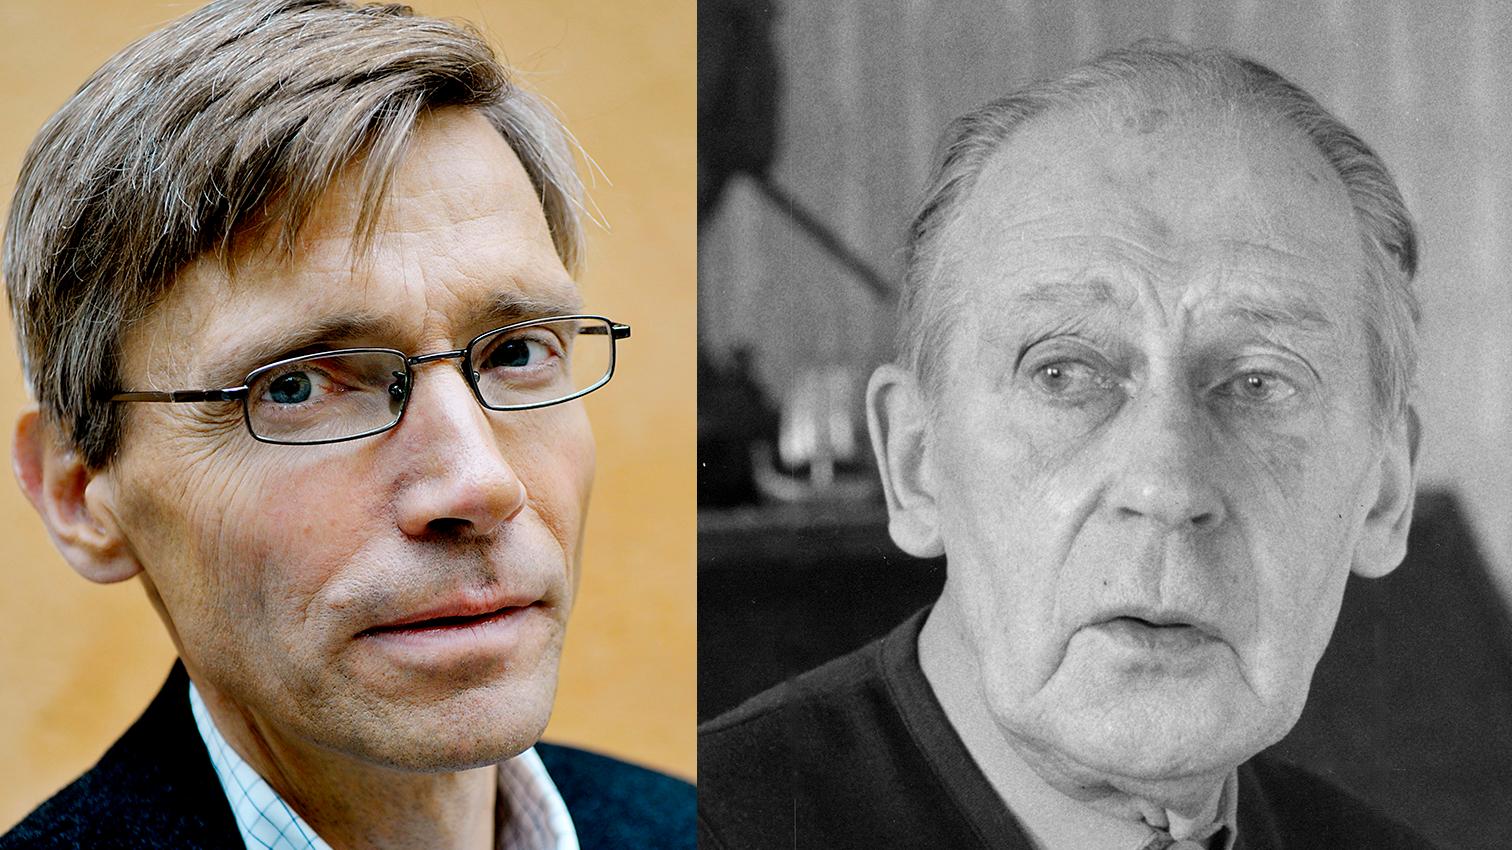 Per Svensson litar på Sven-Olov Lindholms uppgifter att han blev kommunist. ”Jag förstår att Per Svensson gillar Lindholms berättelse”, skriver Carsten Palmær.